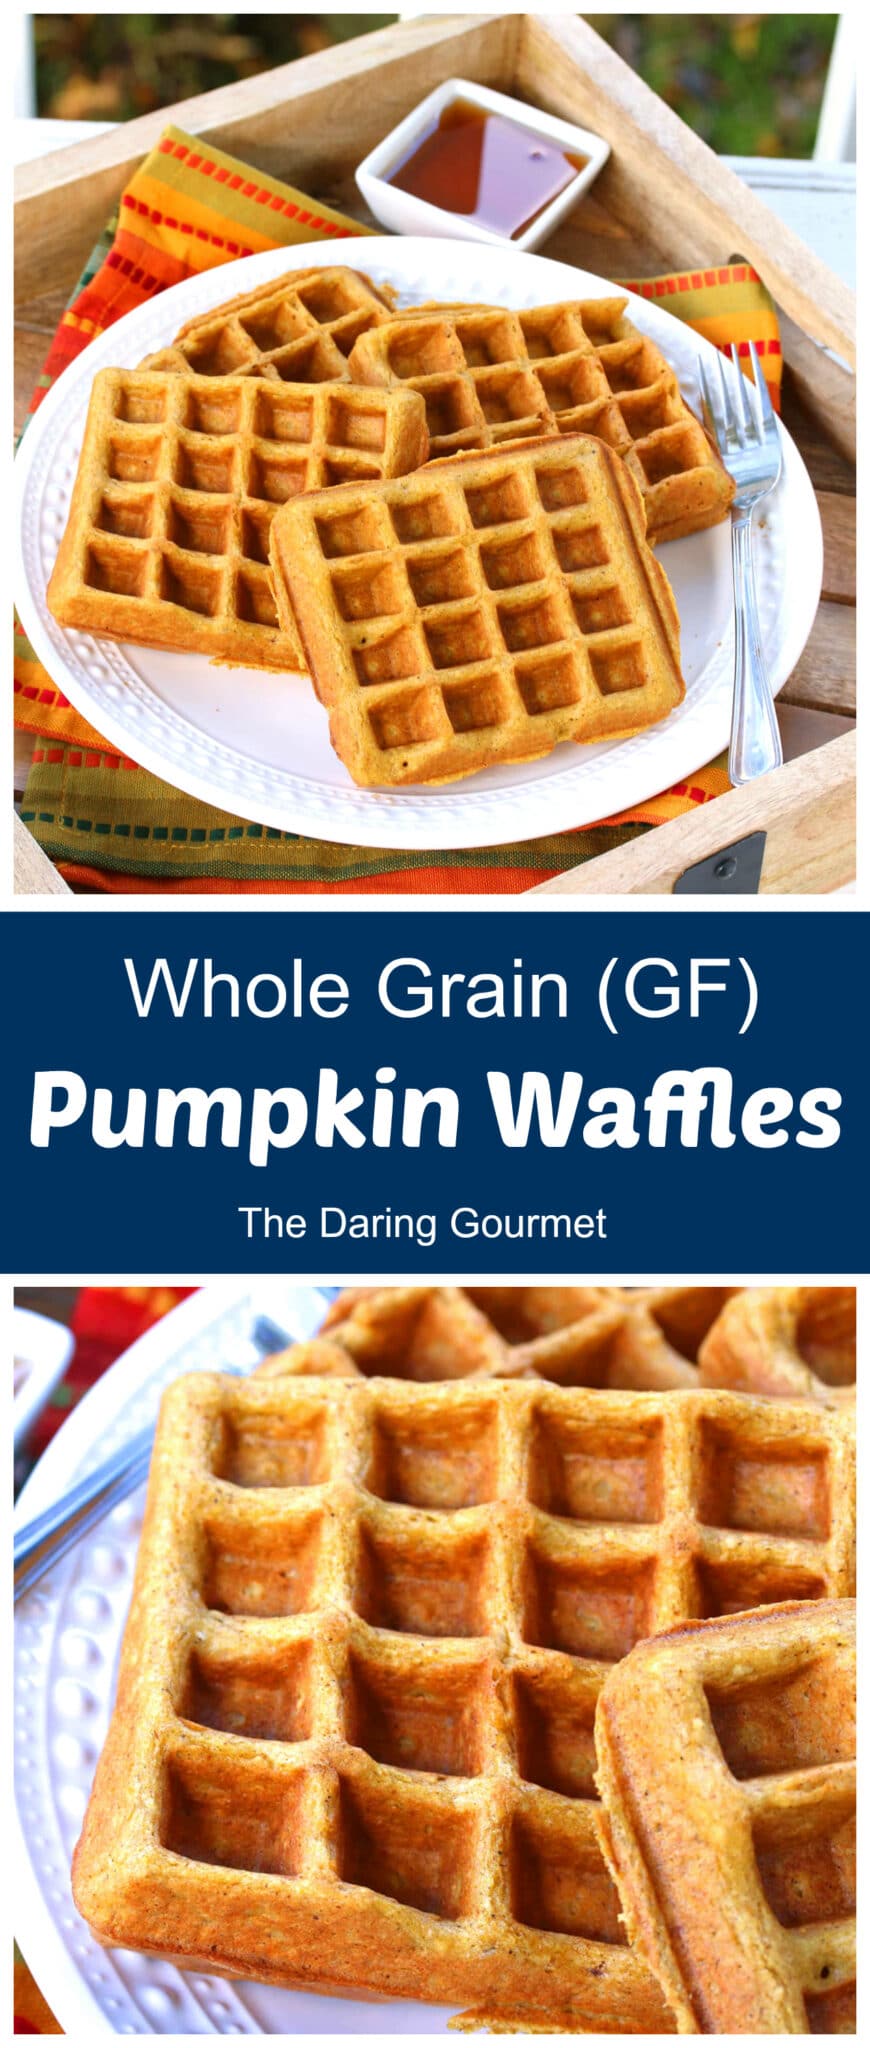 pumpkin waffles recipe gluten free whole grain oat